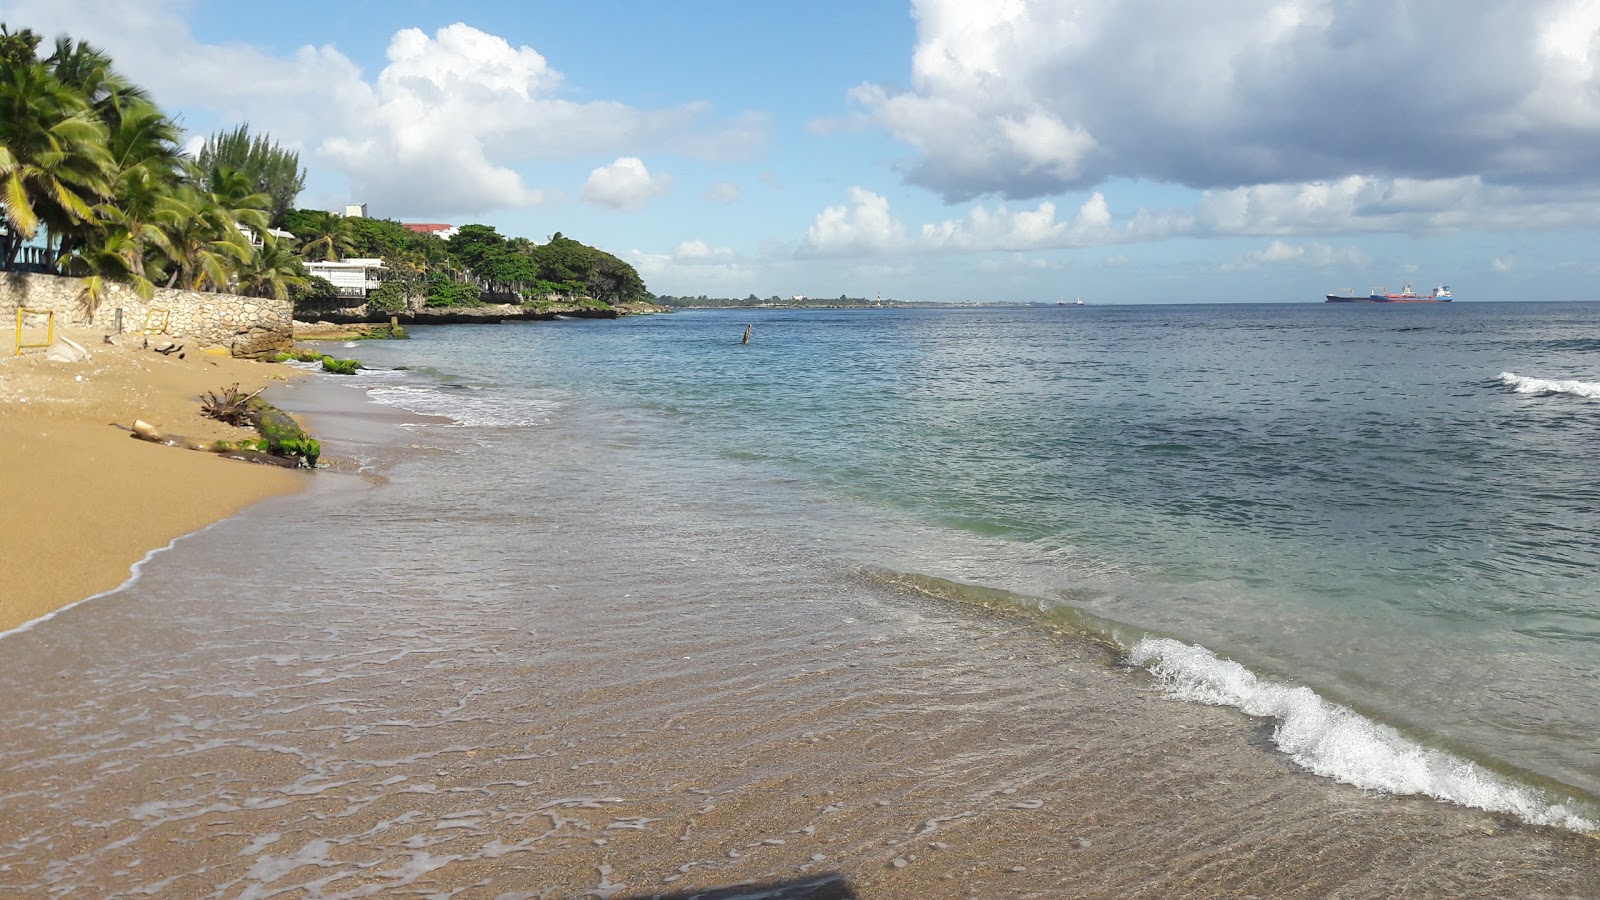 Zdjęcie Guibia beach z powierzchnią szary piasek